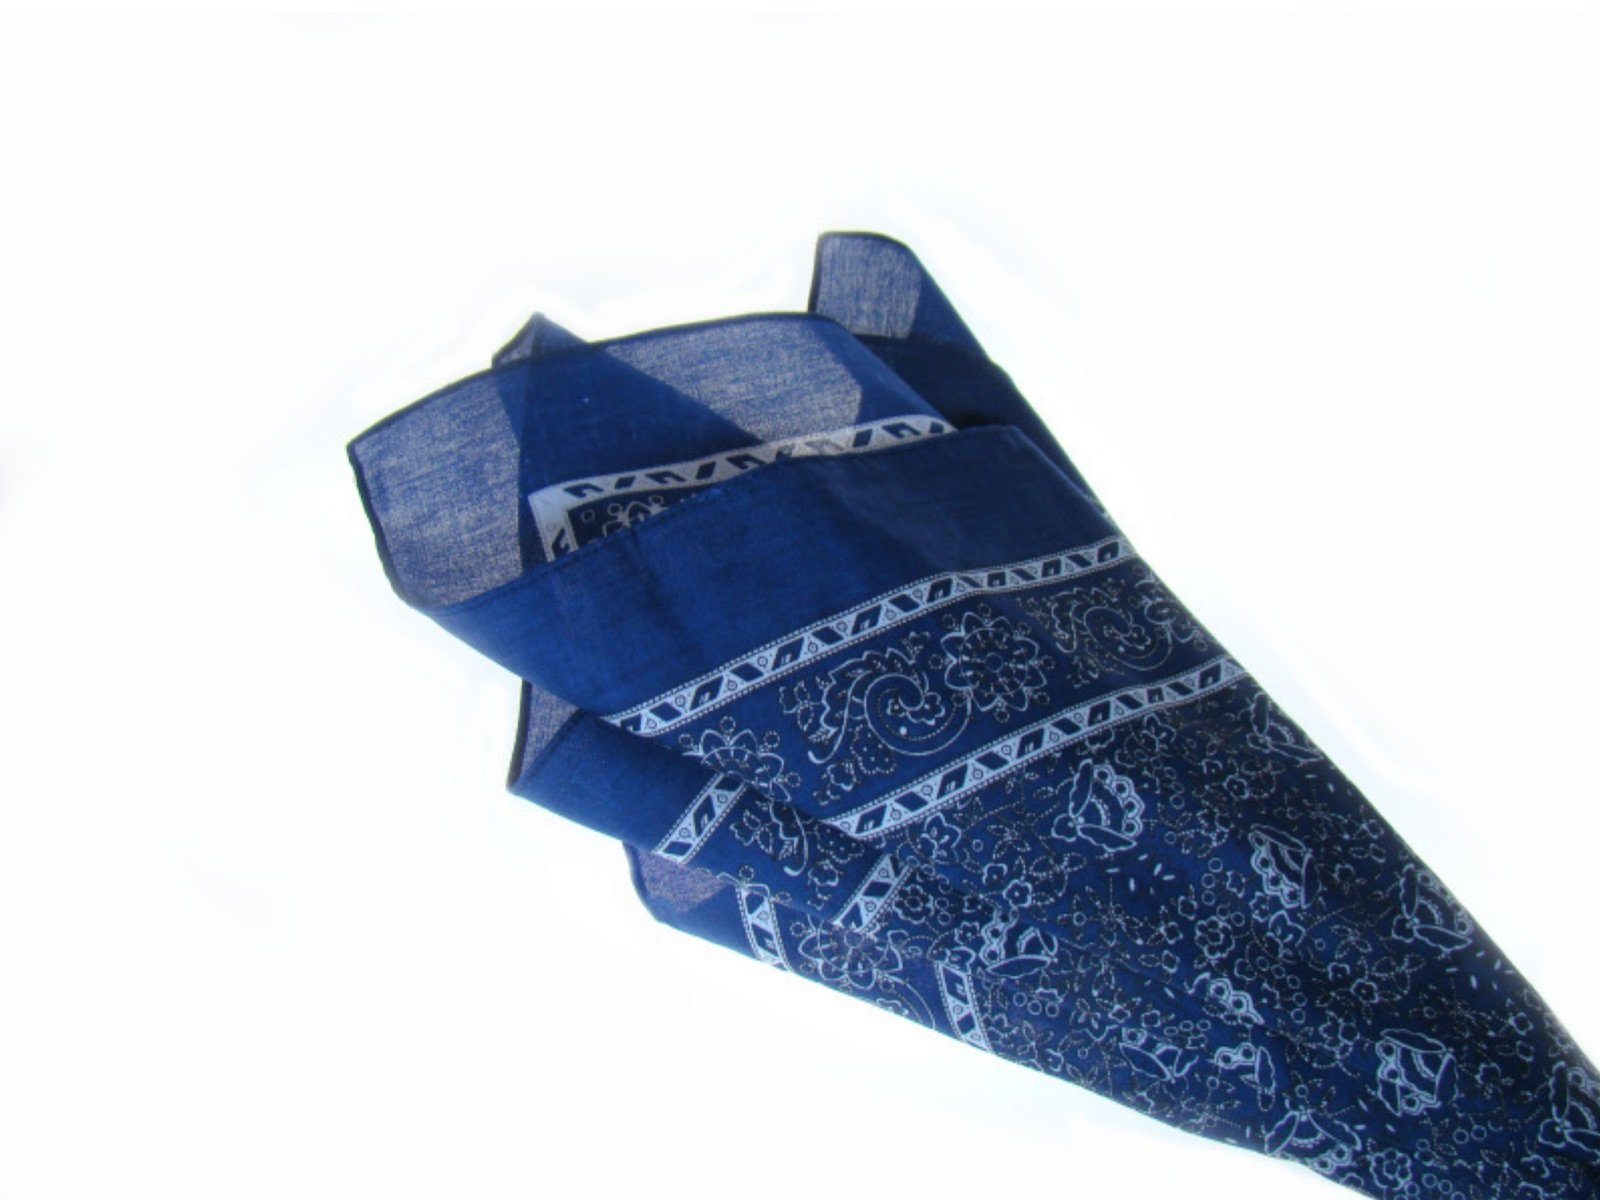 LK Trend & Style Nickituch Kopftuch Bandana, das modische Design bleibt im Trend Blau Venezian